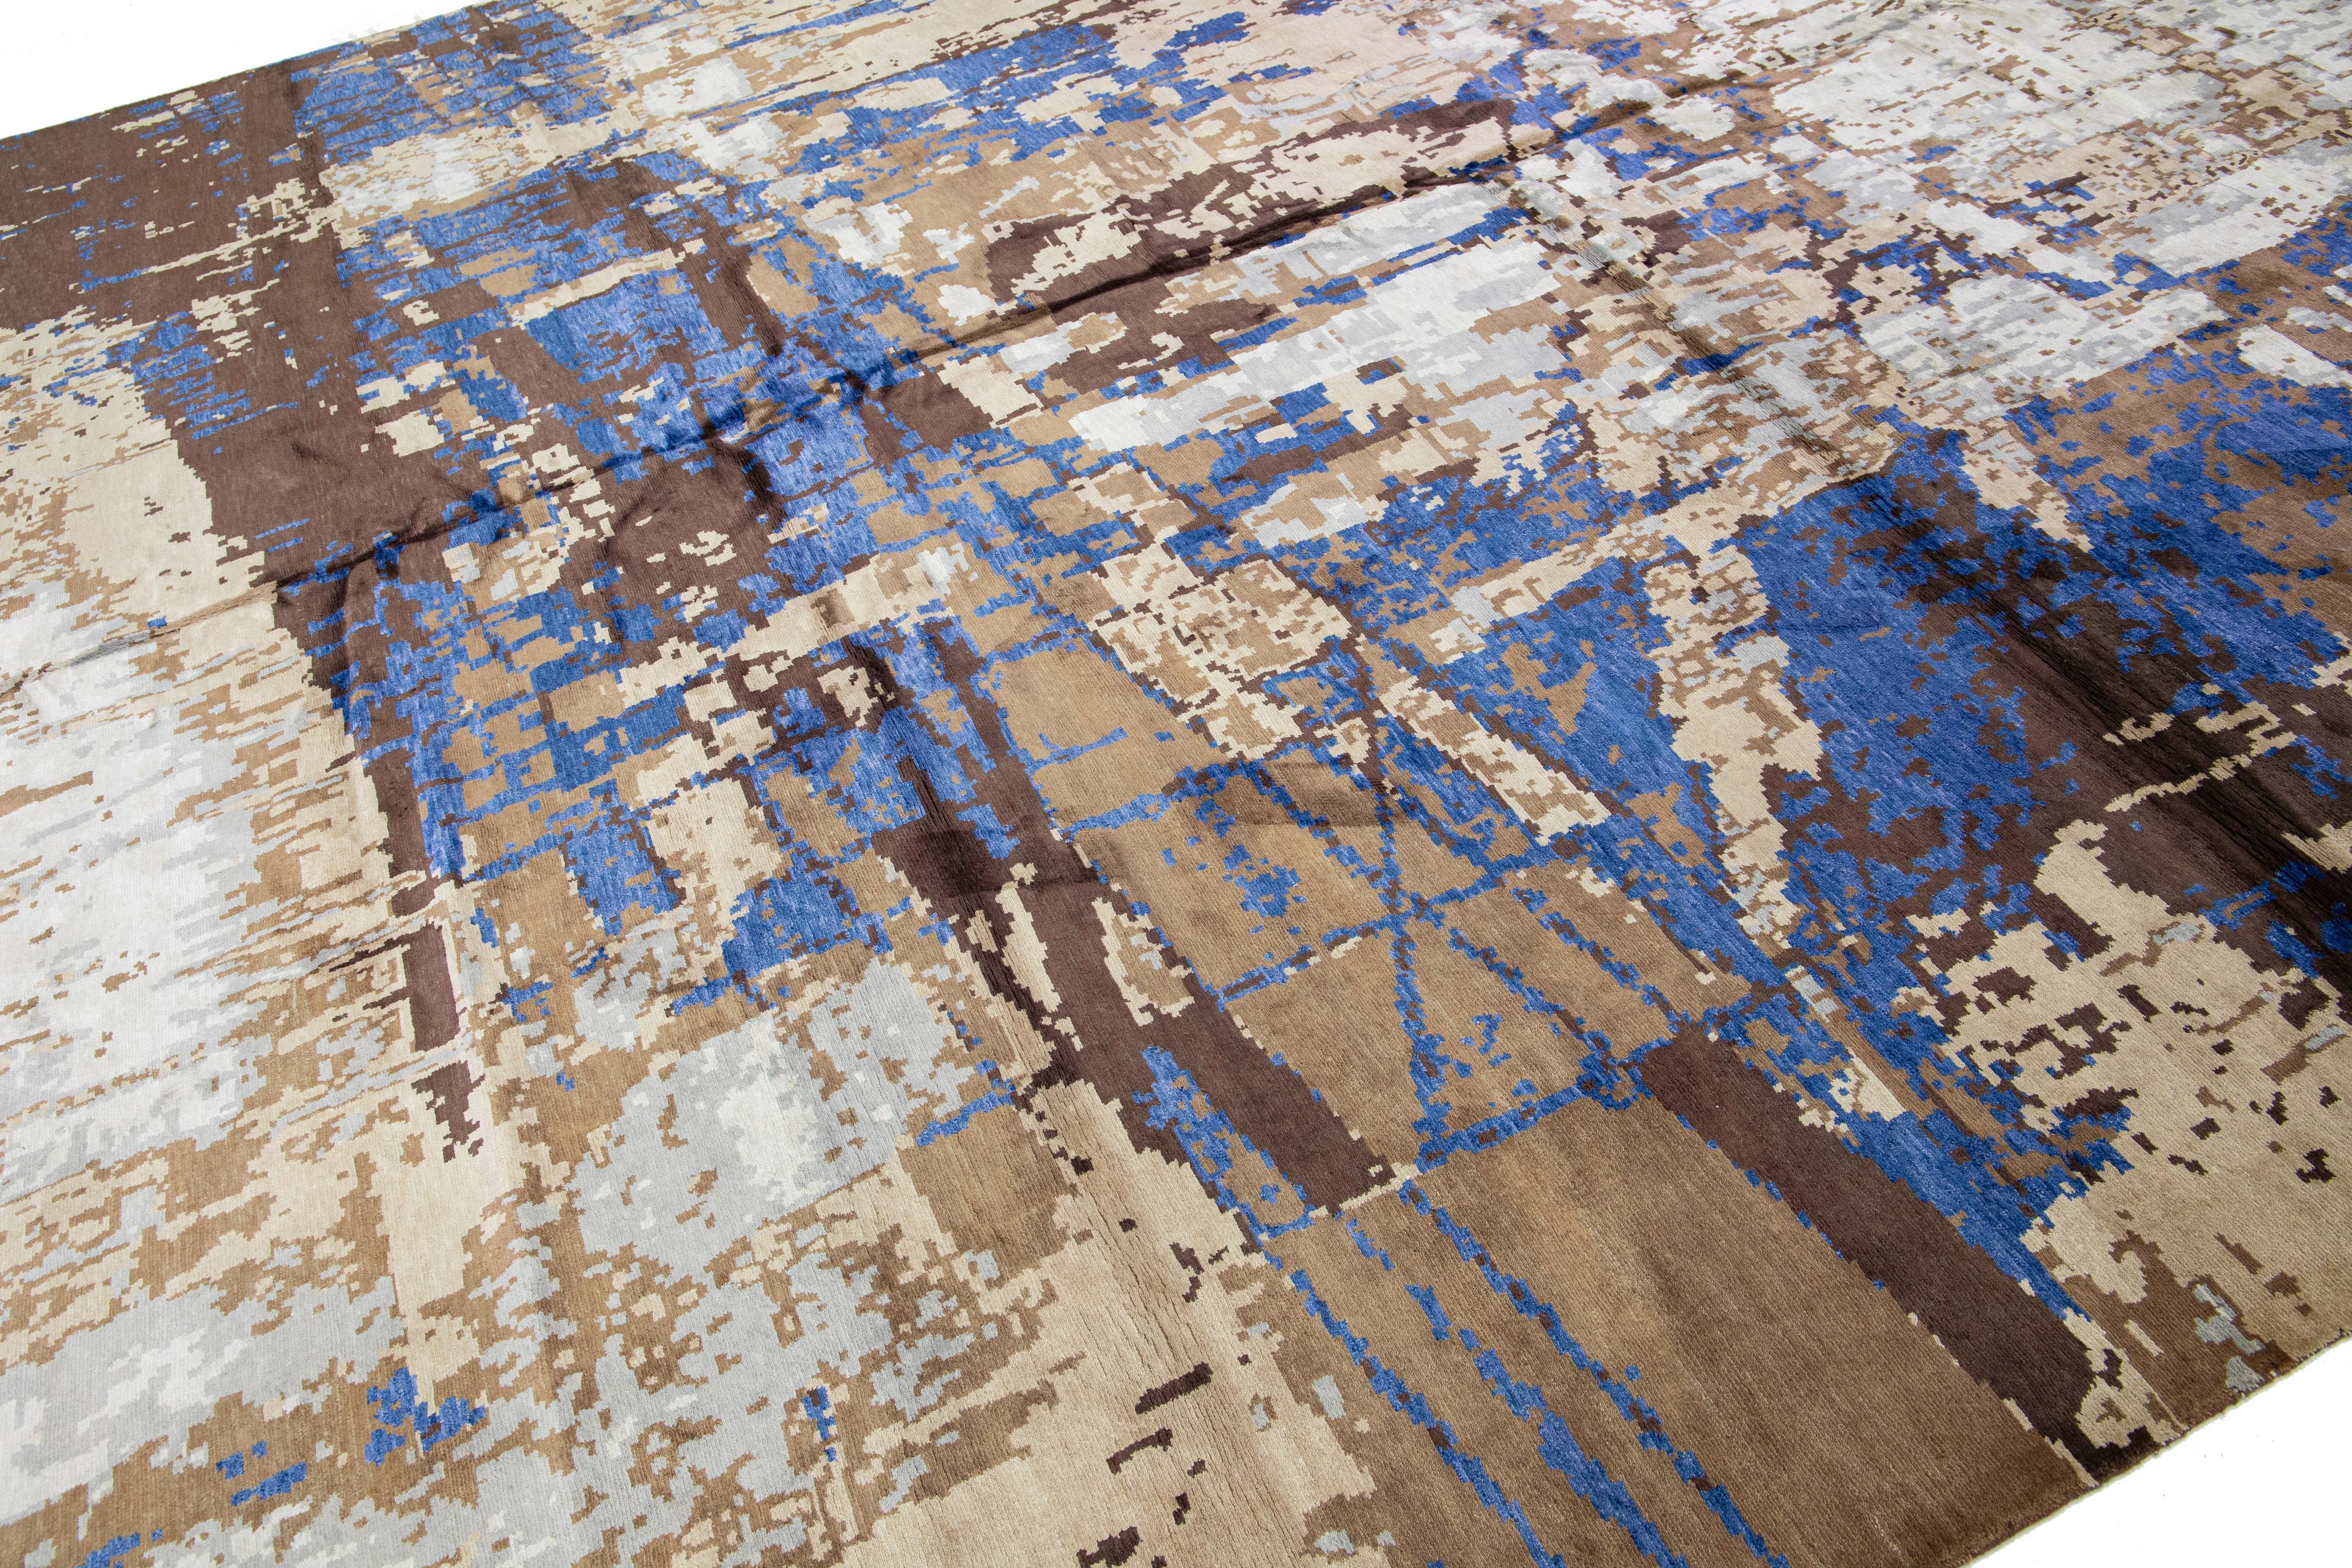 Schöner moderner handgeknüpfter Woll- und Seidenteppich mit beigen, blauen und braunen Feldern. Dieser moderne Teppich hat ein wunderschönes geometrisches, abstraktes Allover-Muster.

Dieser Teppich misst 12' x 15'1